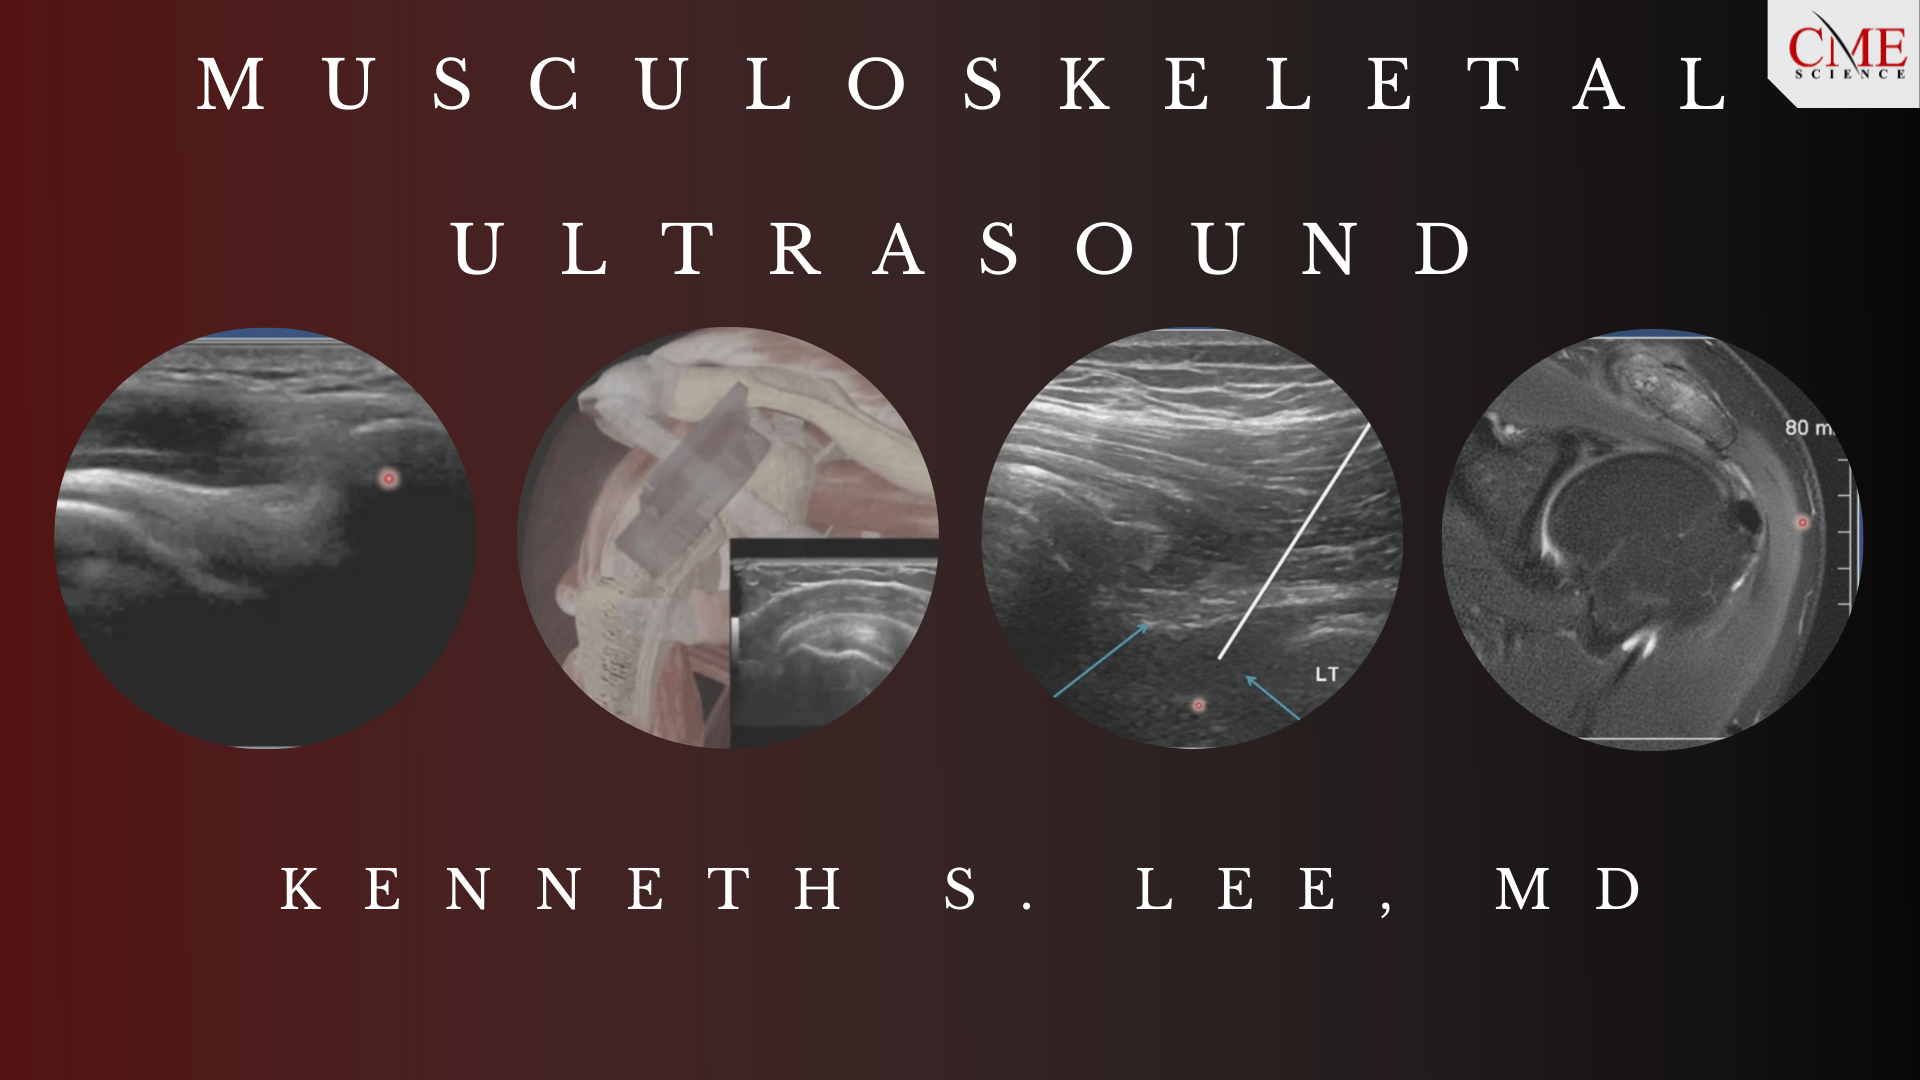 MSK Ultrasound Lee MD